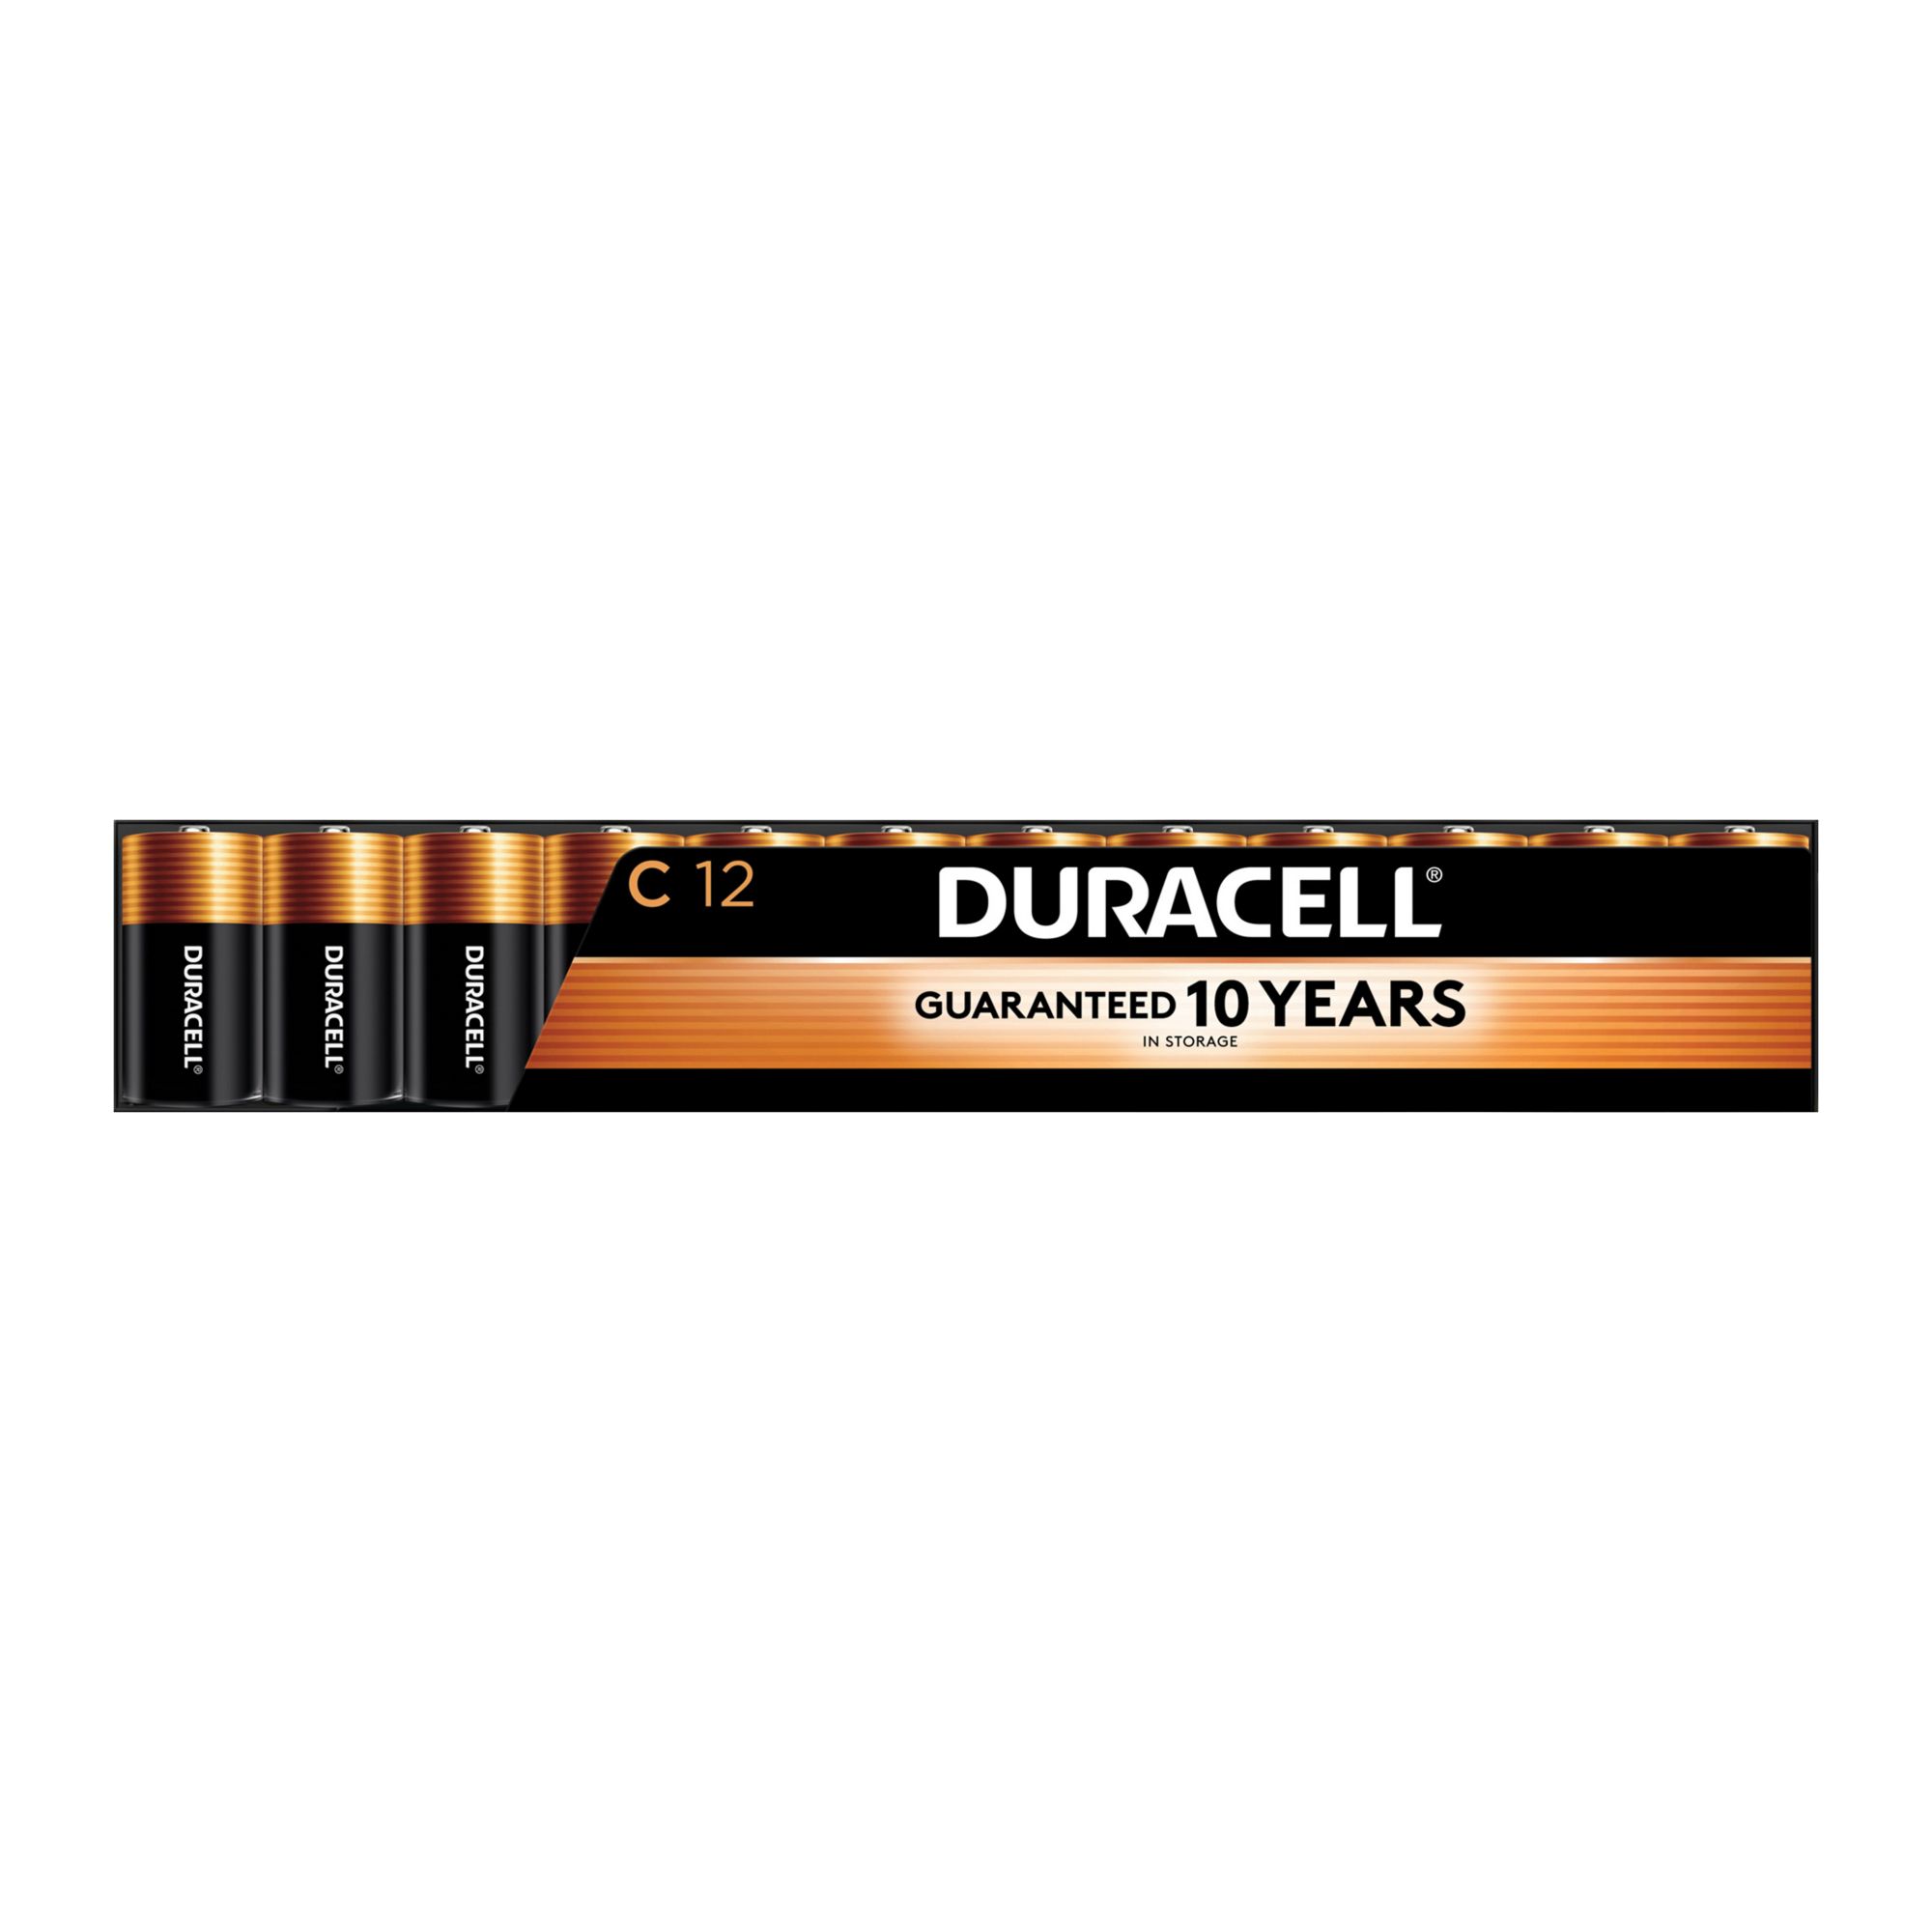 Duracell Coppertop 9V Battery Bulk box of 12